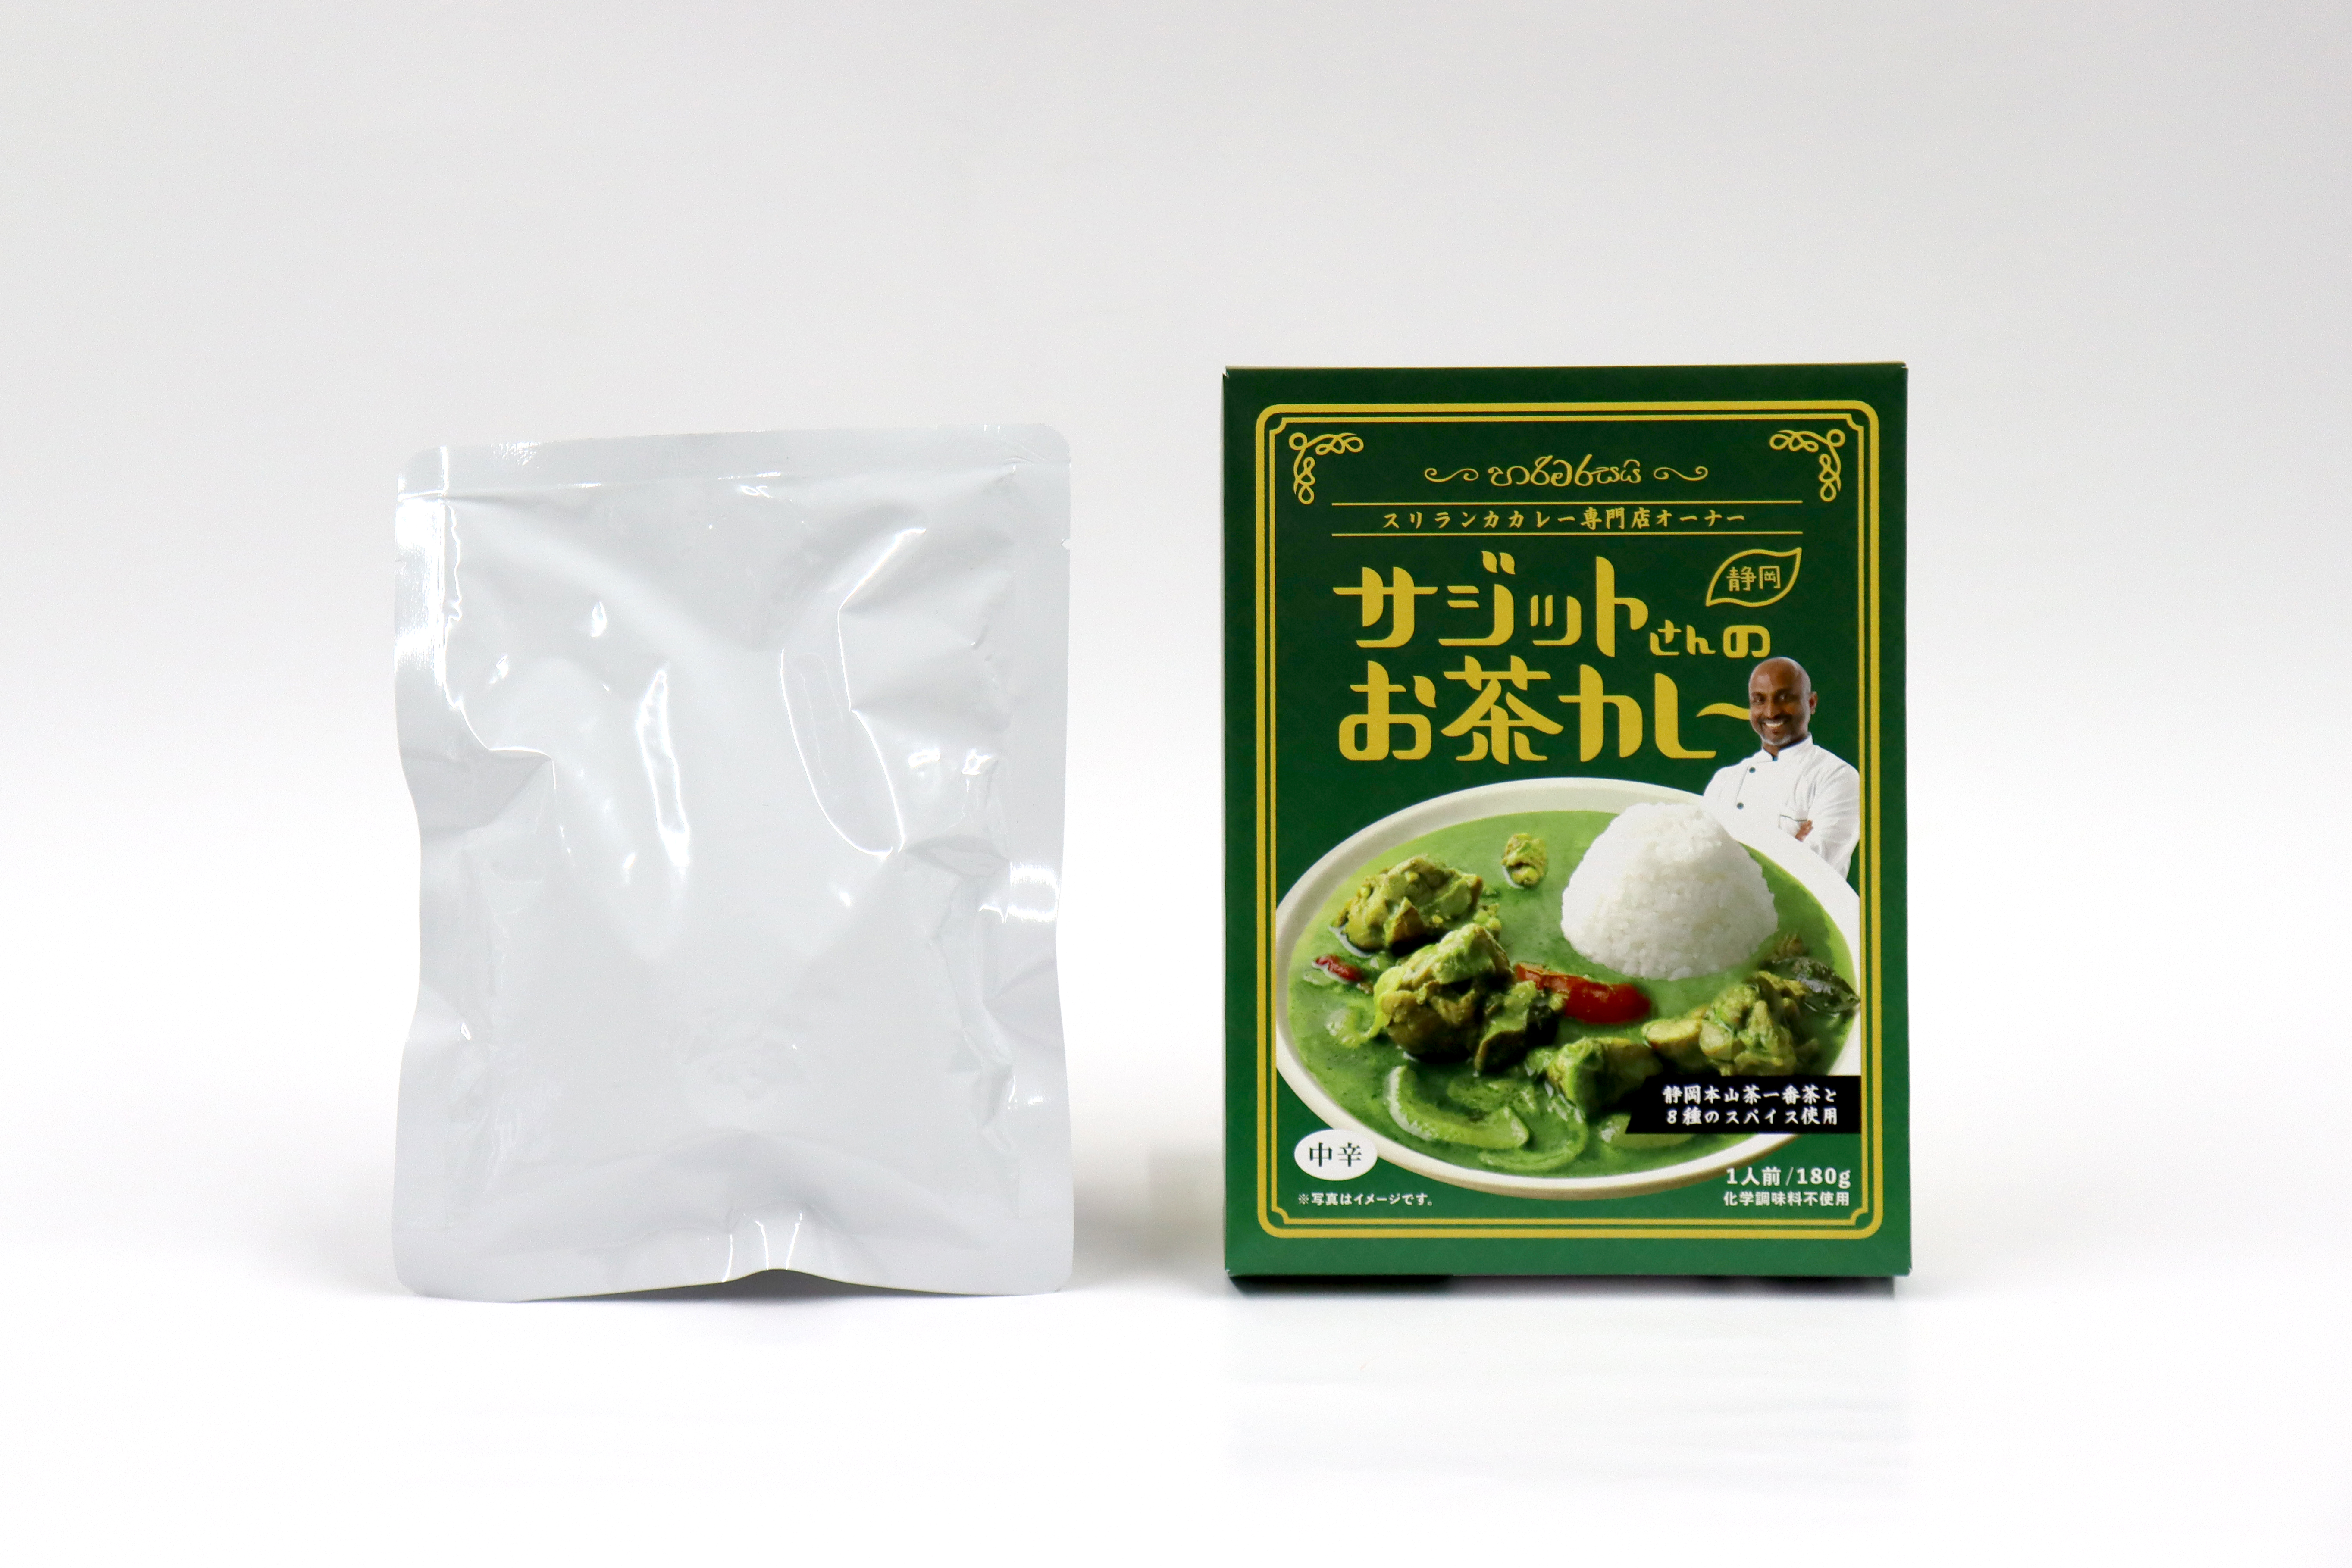 「サジットさんのお茶カレー」2/12(金)発売開始！